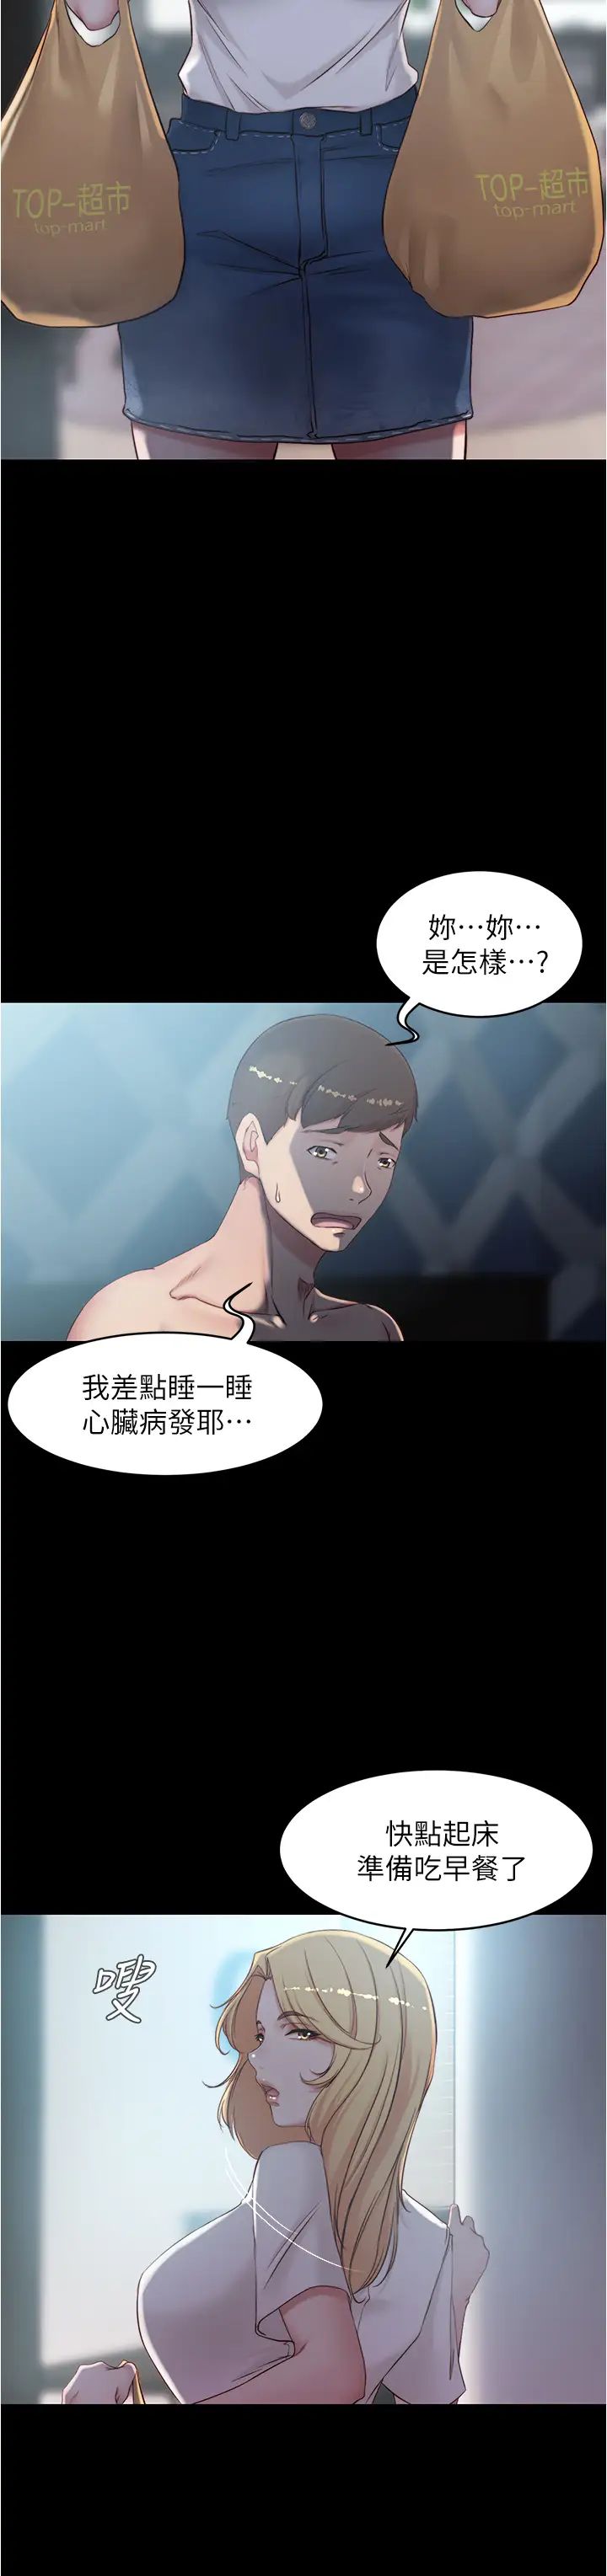 韩国污漫画 小褲褲筆記 第43话 好想看张穗桦的裸体…! 19